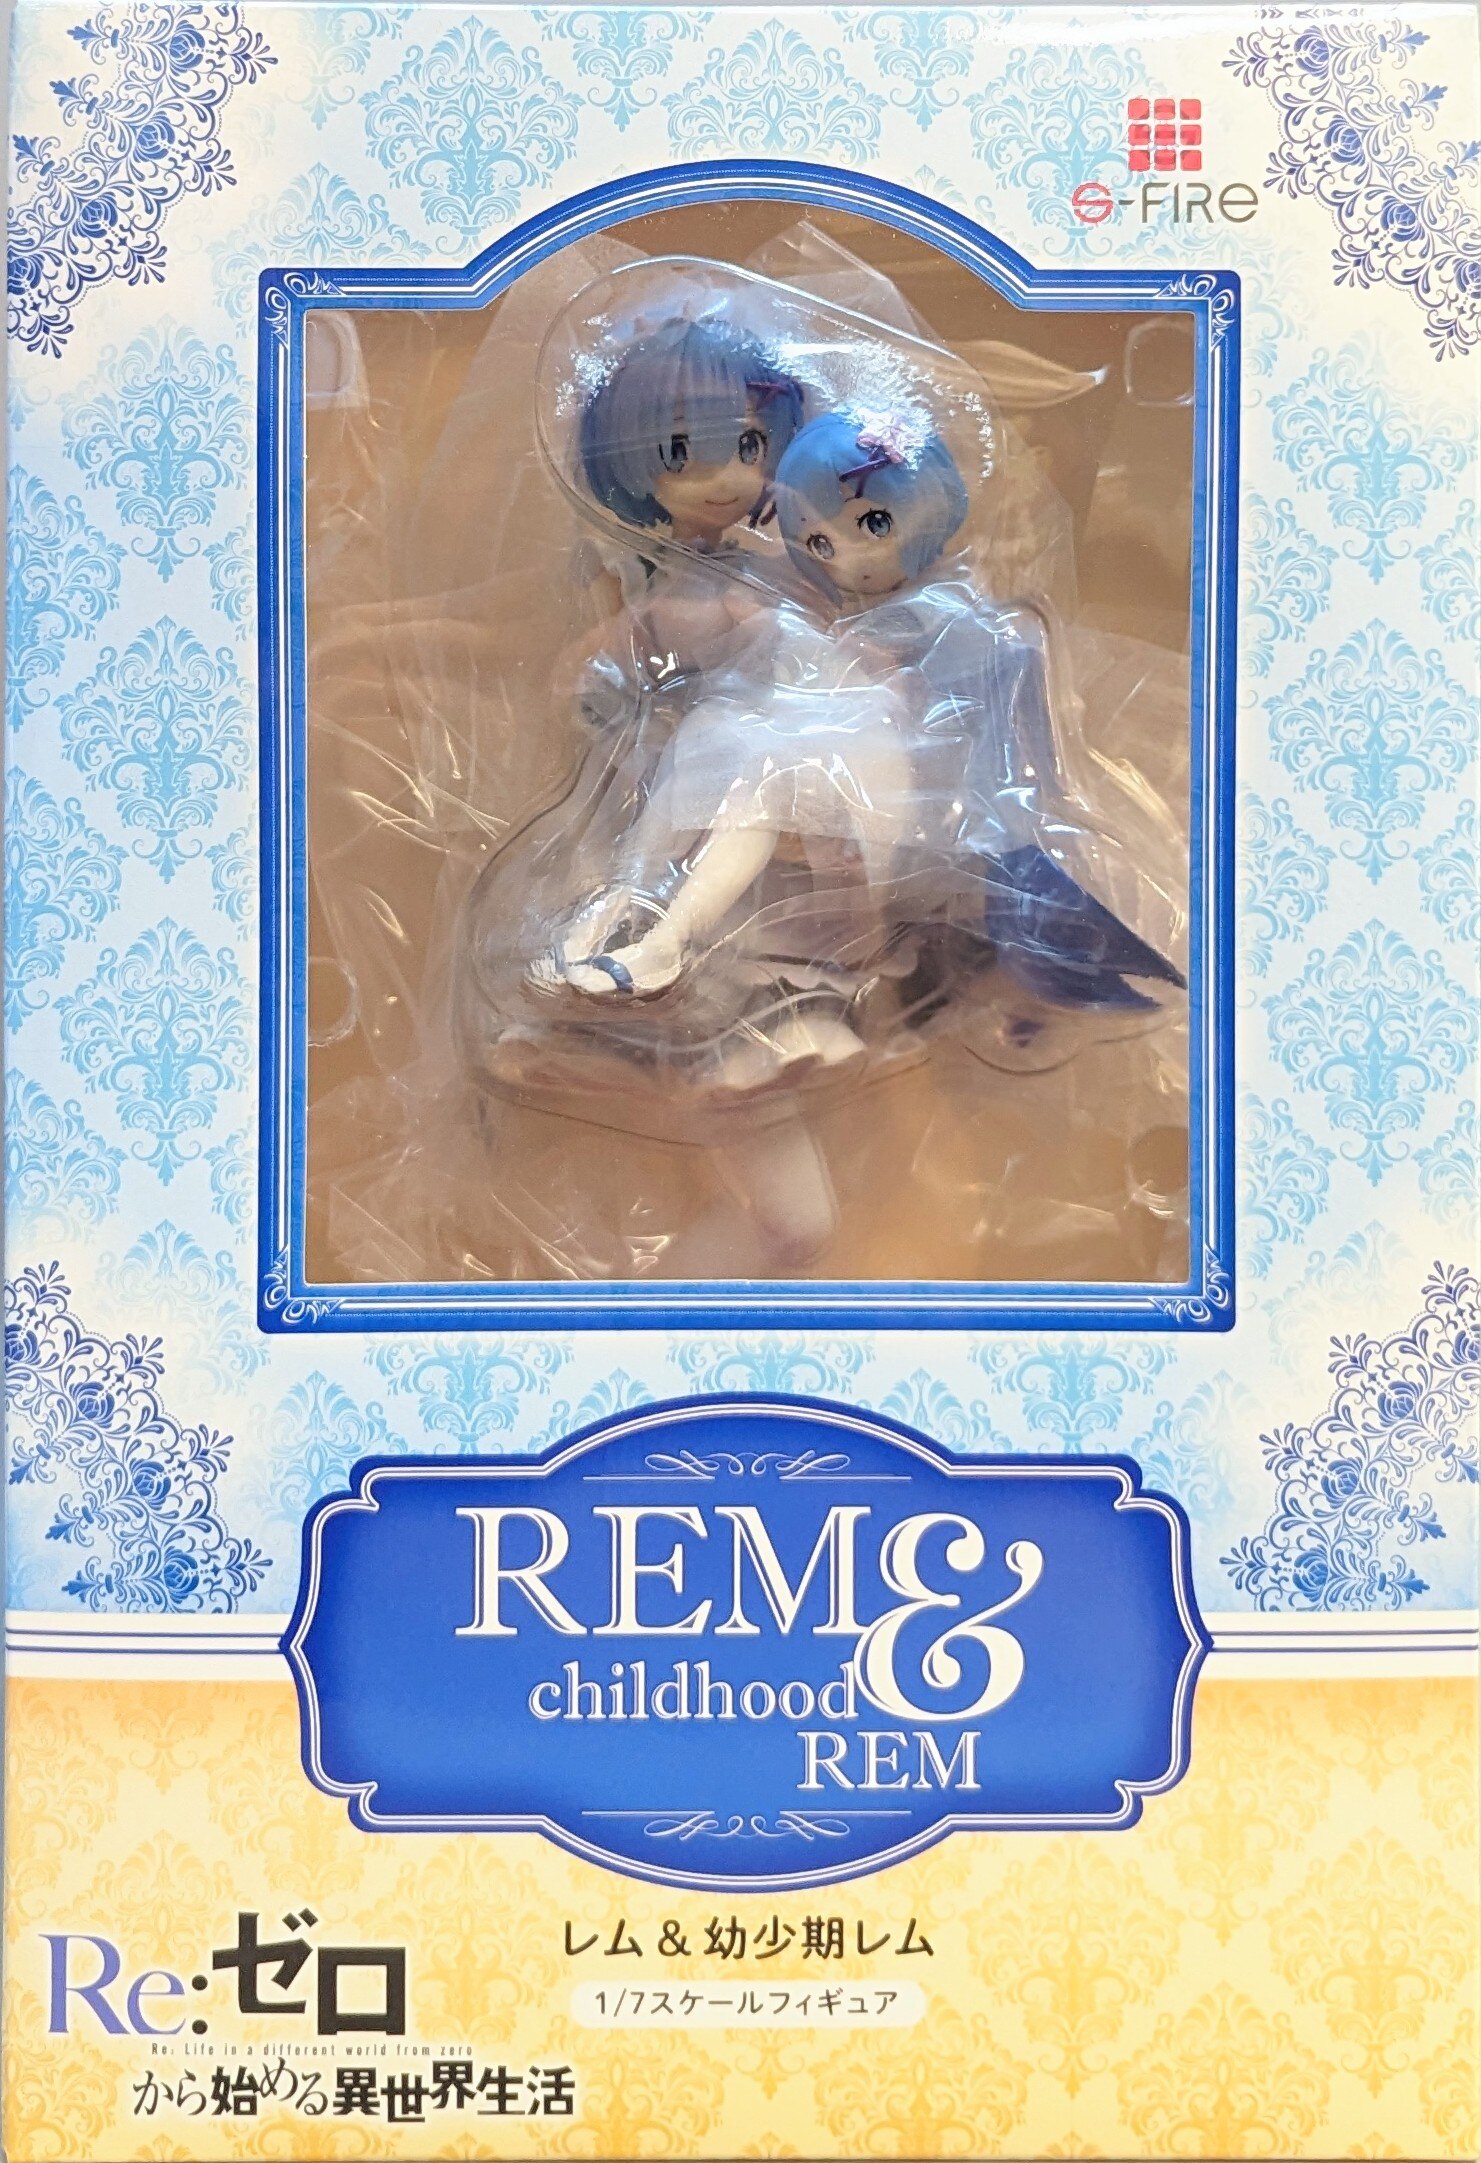 [New] S-FIRE Re:Zero Rem & Childhood Rem 1/7 Figure Japan